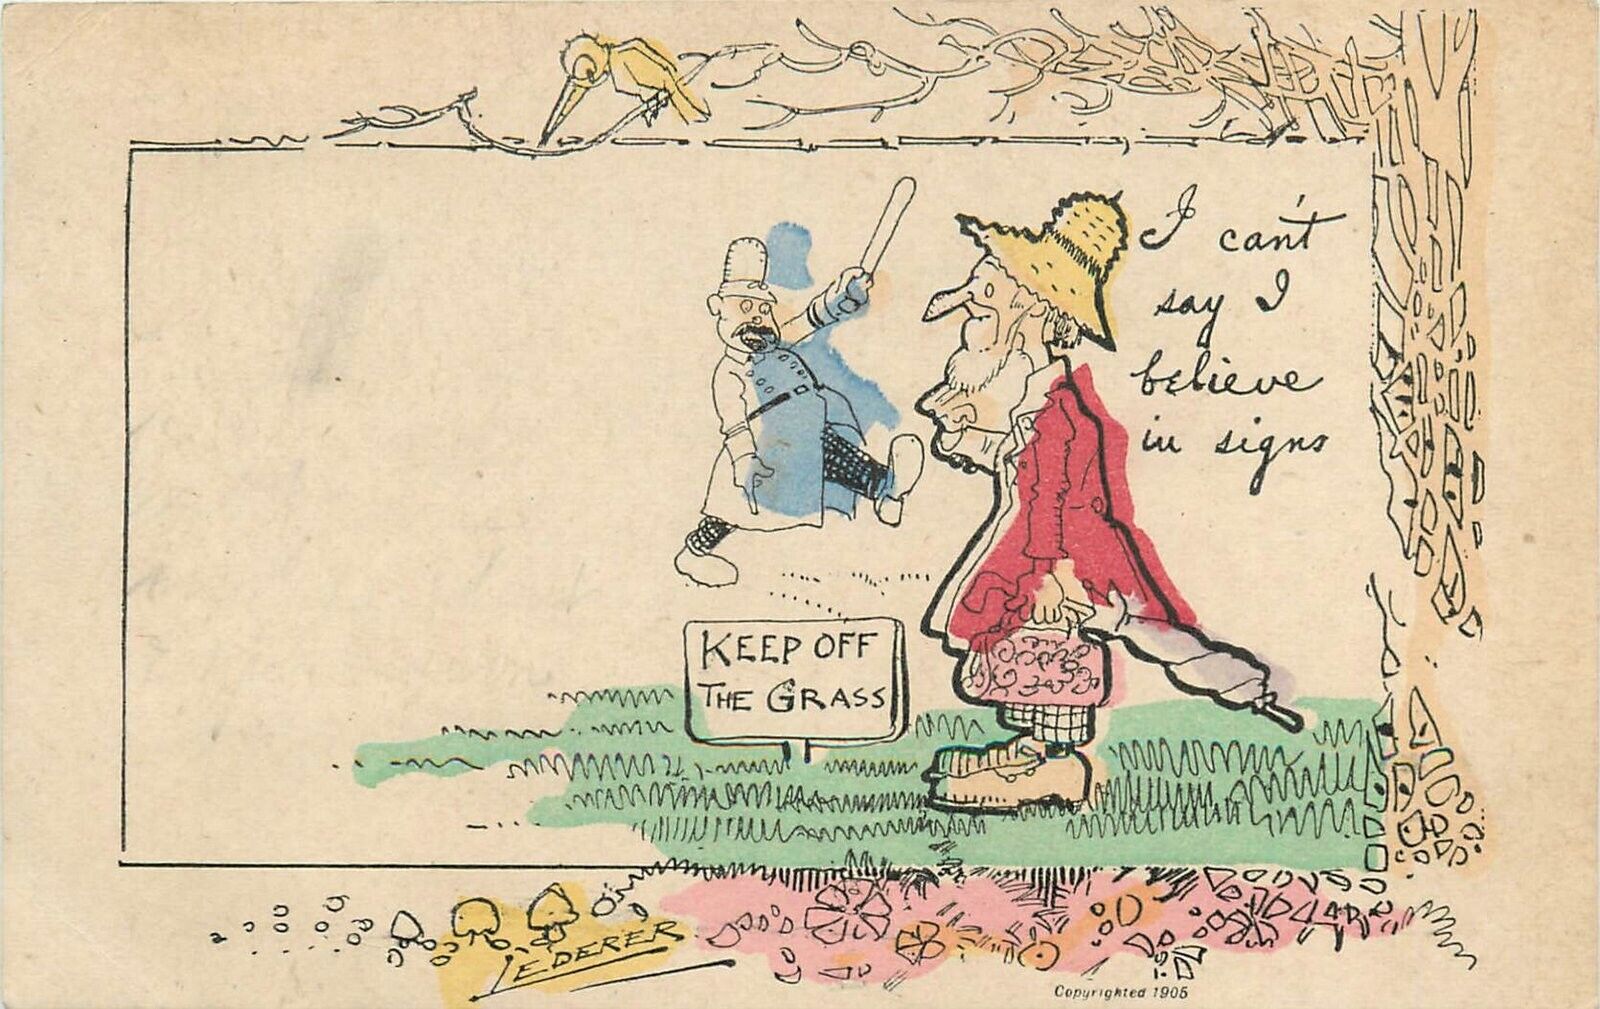 Postcard 1908 Lederer Keep off Grass Police comic humor artist impression 24-582